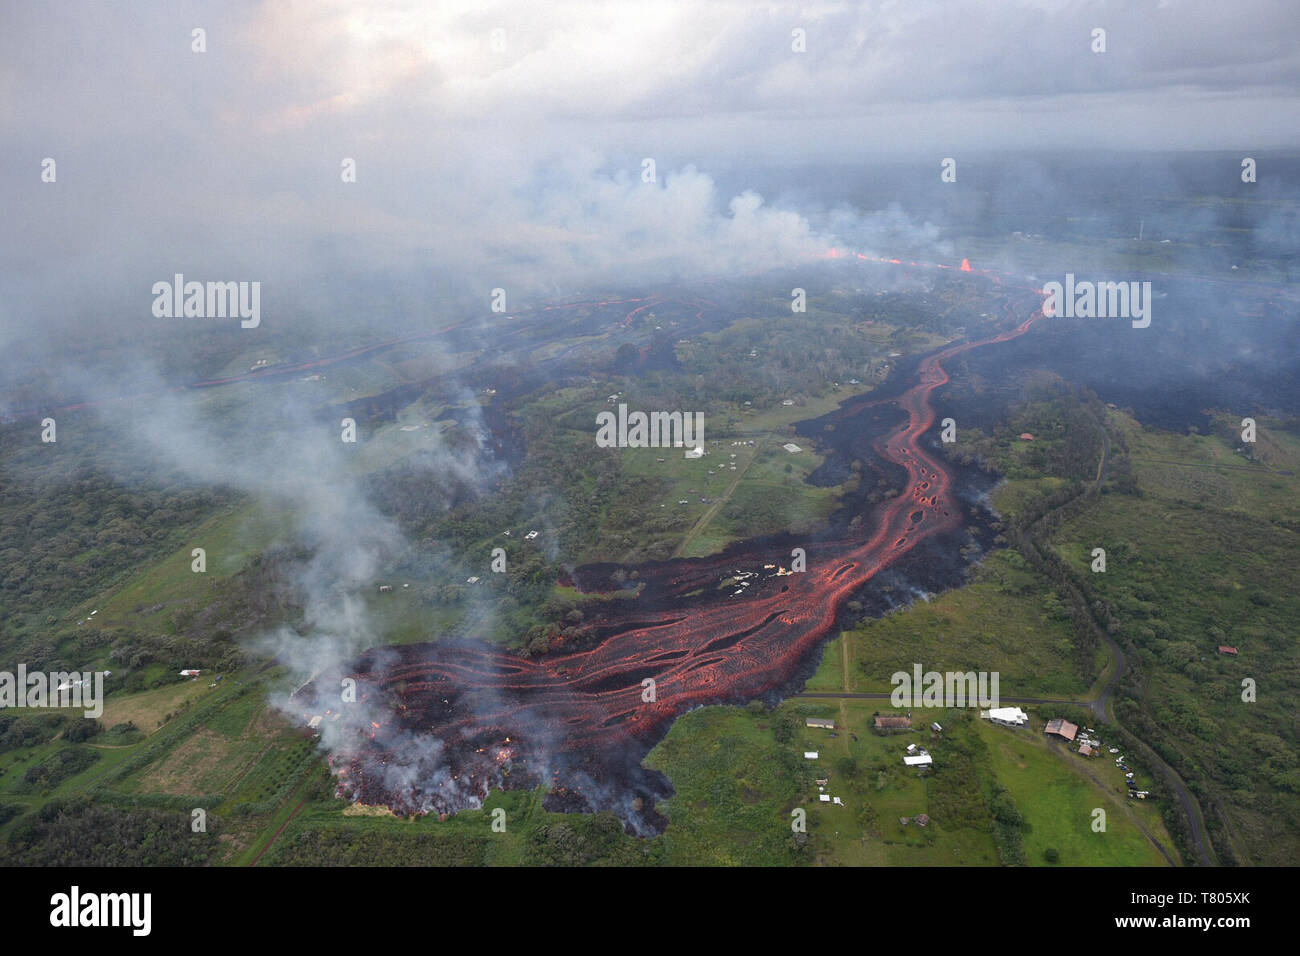 Il Kilauea eruzione 2018 Foto Stock